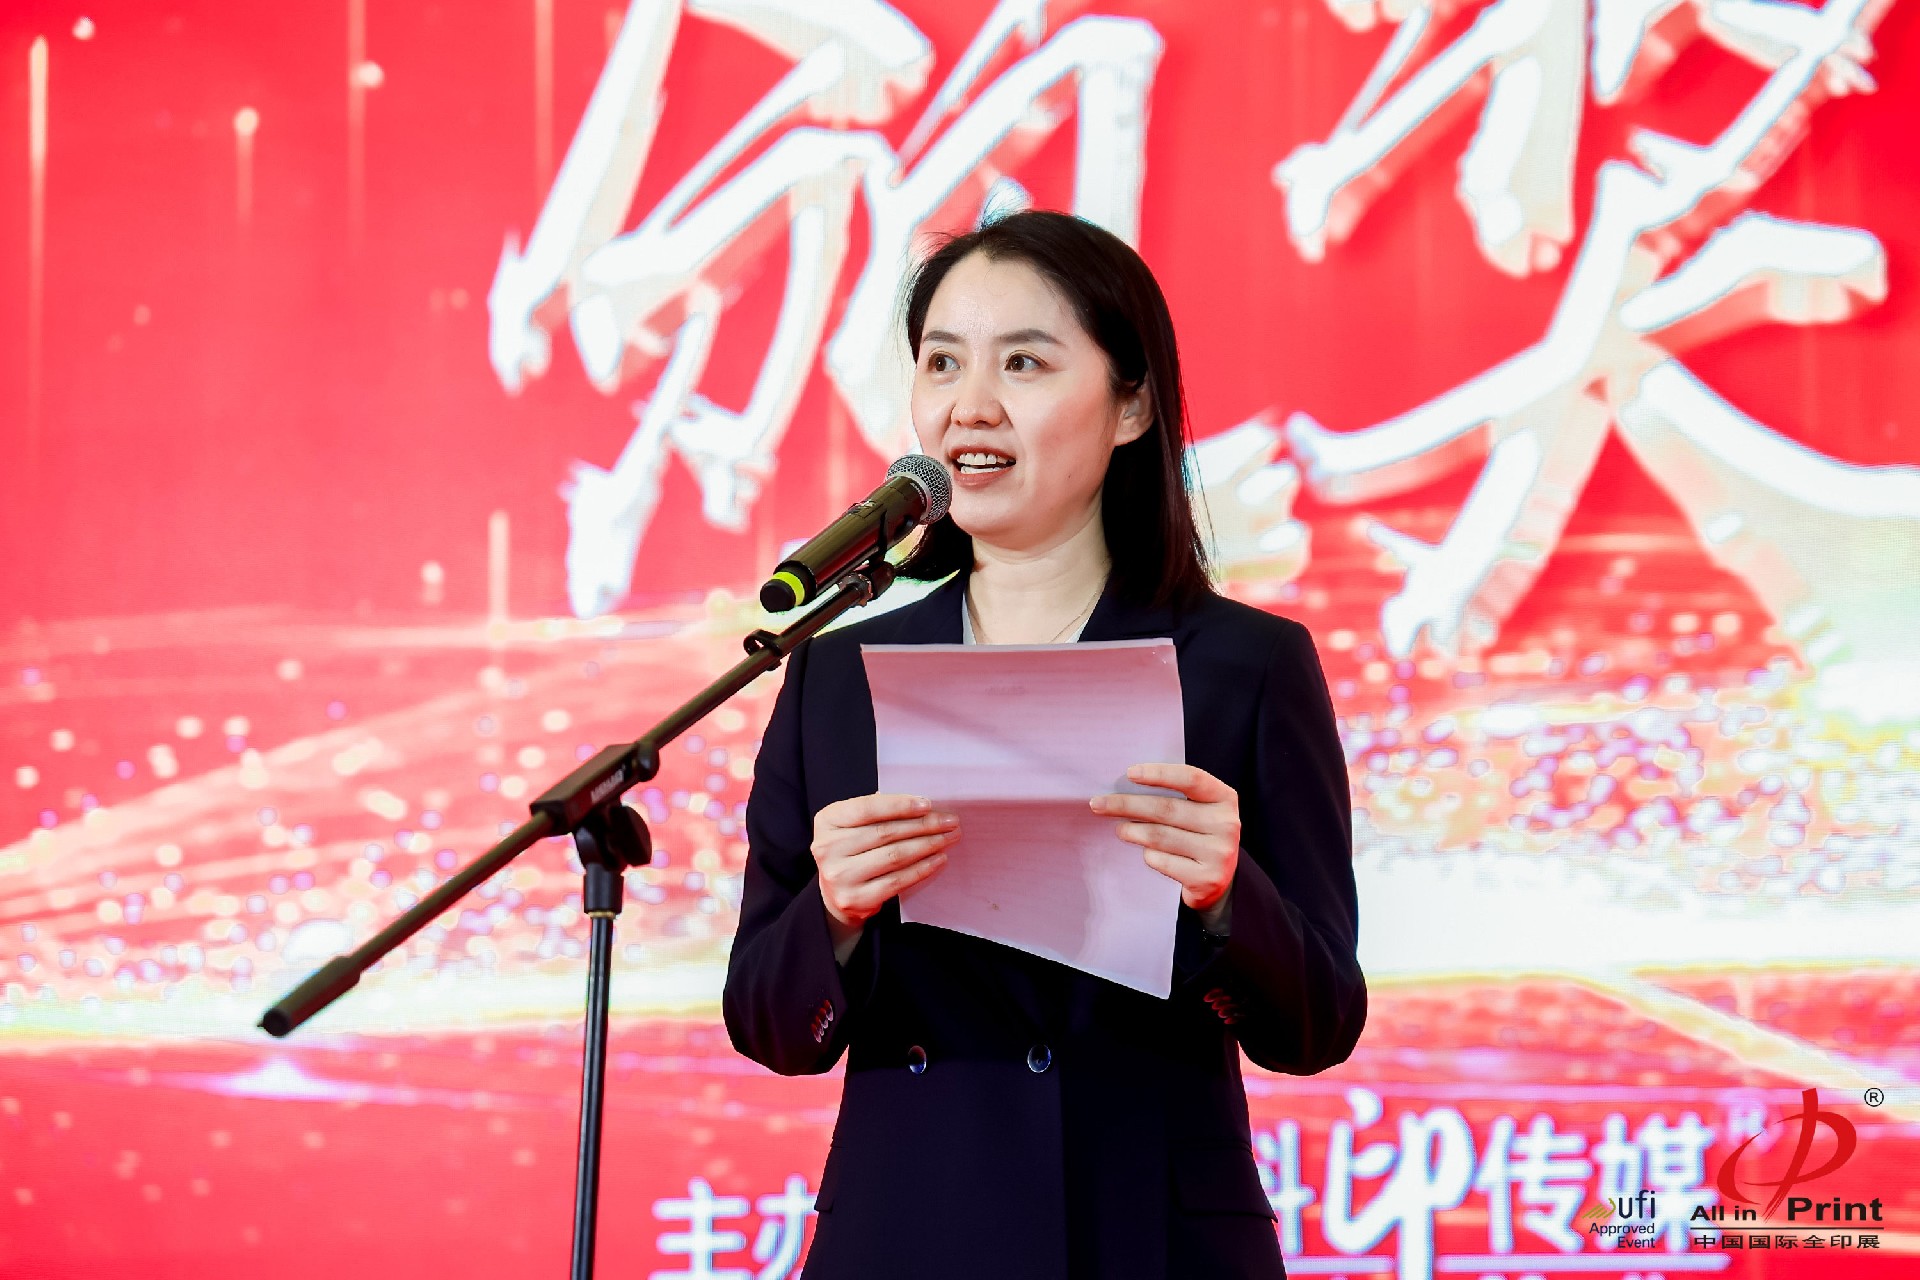 中国印刷技术协会标签与特种印刷分会理事长兼秘书长刘轶平女士在颁奖典礼上致辞